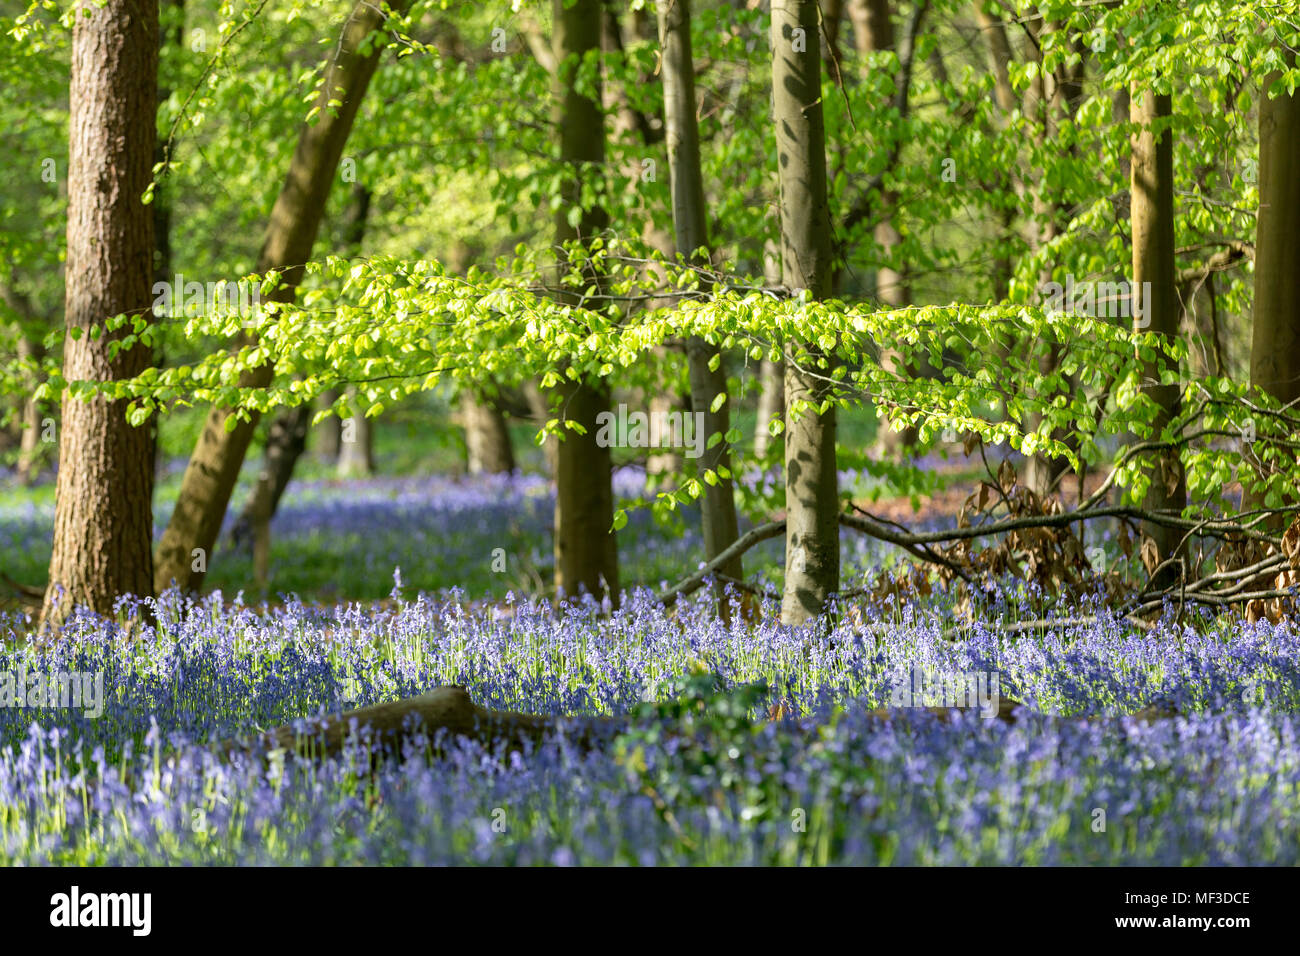 Tapis de jacinthes en bois de hêtre, Buckinghamshire, Angleterre Royaume-uni Banque D'Images